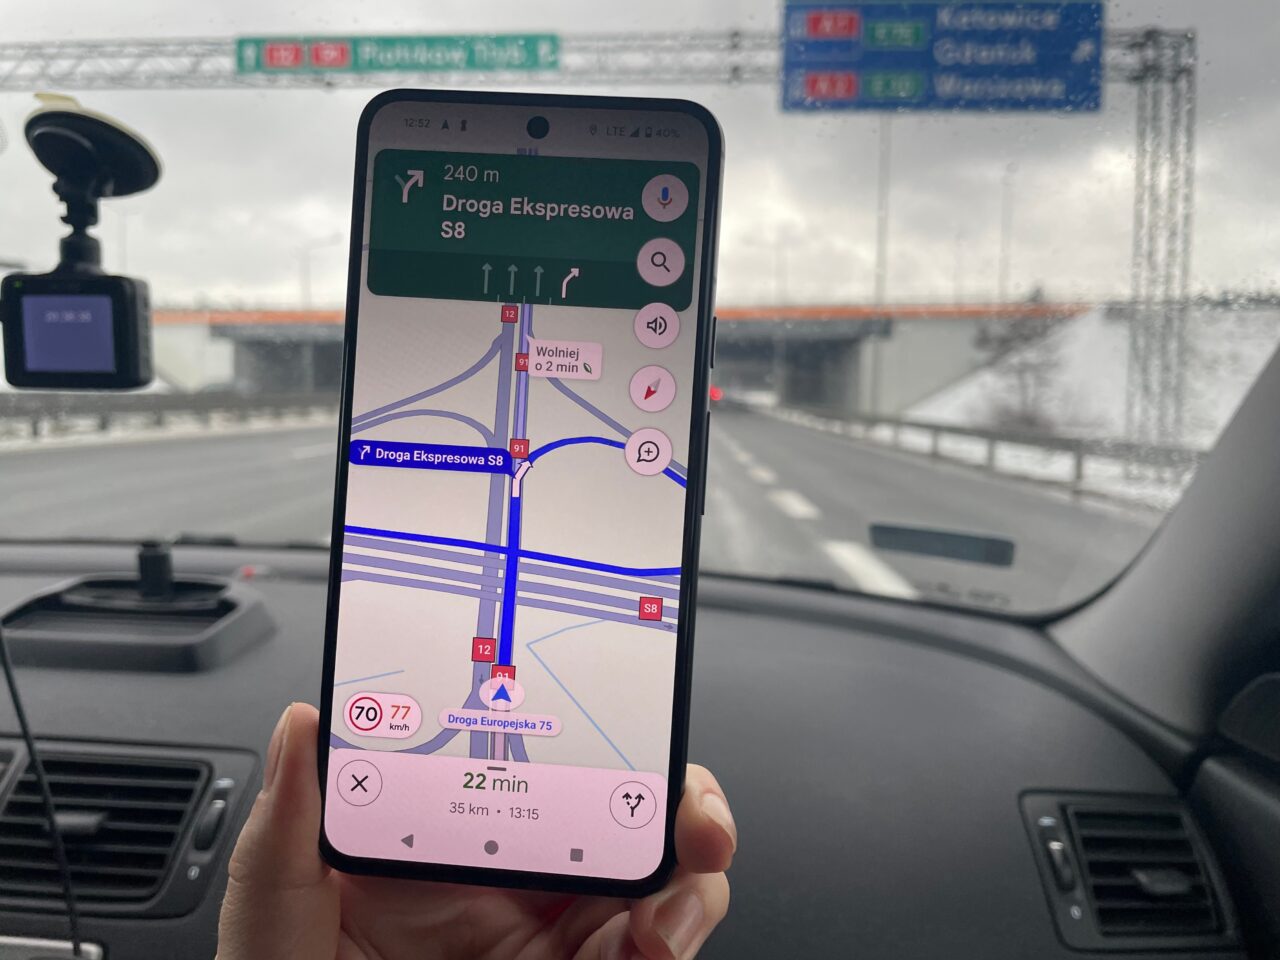 Smartfon trzymany w ręce na tle przedniej szyby samochodu, wyświetlający aplikację nawigacyjną z mapą, wskazującą trasę na drodze ekspresowej S8.